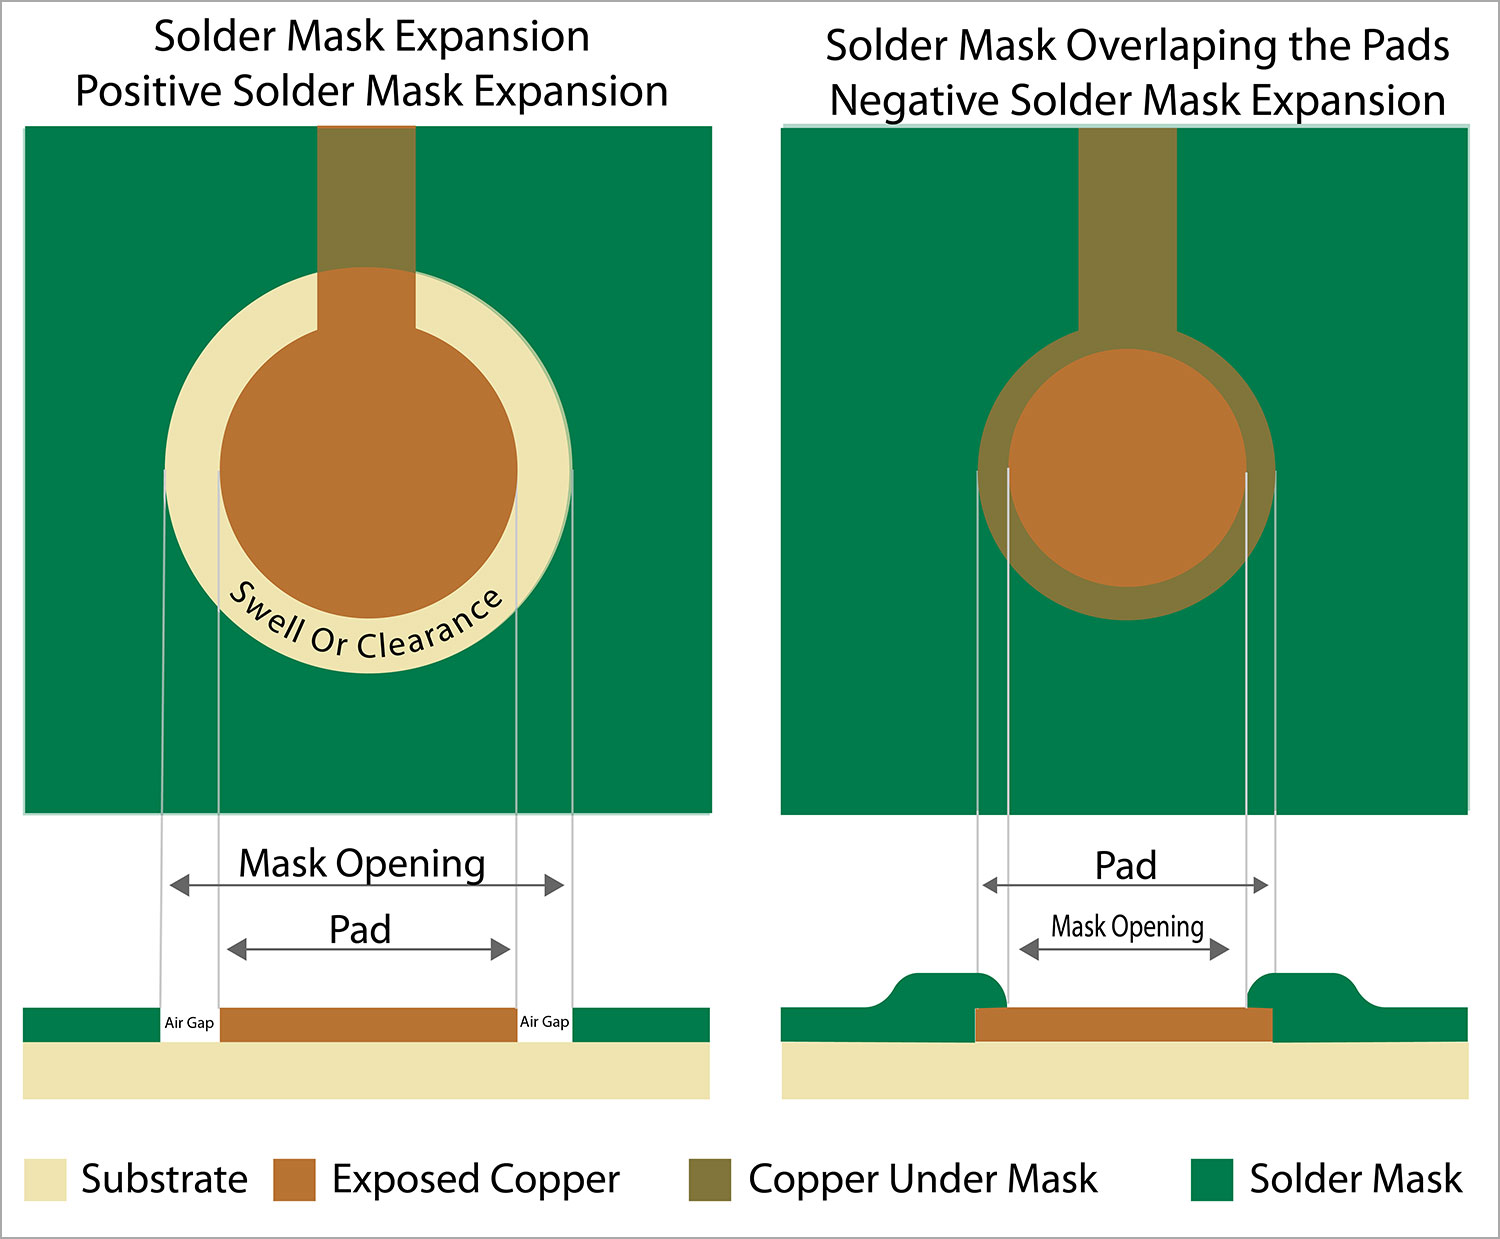 Positive Solder Mask Expansion Vs. Negative Solder Mask Expansion